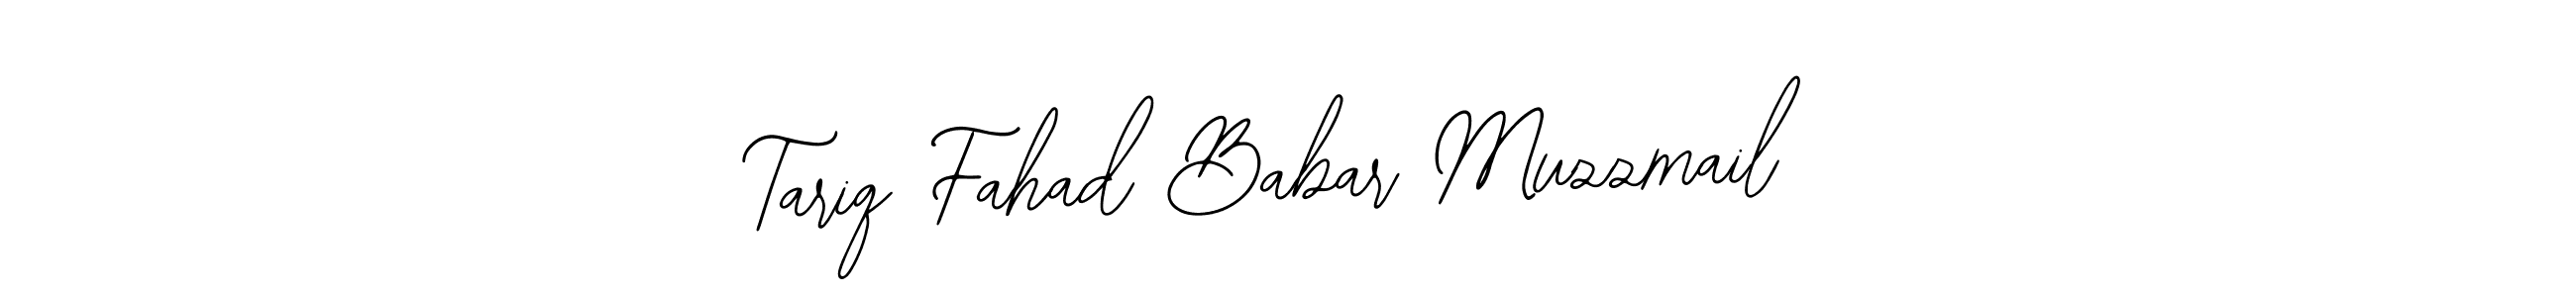 Tariq Fahad Babar Muzzmail stylish signature style. Best Handwritten Sign (Bearetta-2O07w) for my name. Handwritten Signature Collection Ideas for my name Tariq Fahad Babar Muzzmail. Tariq Fahad Babar Muzzmail signature style 12 images and pictures png